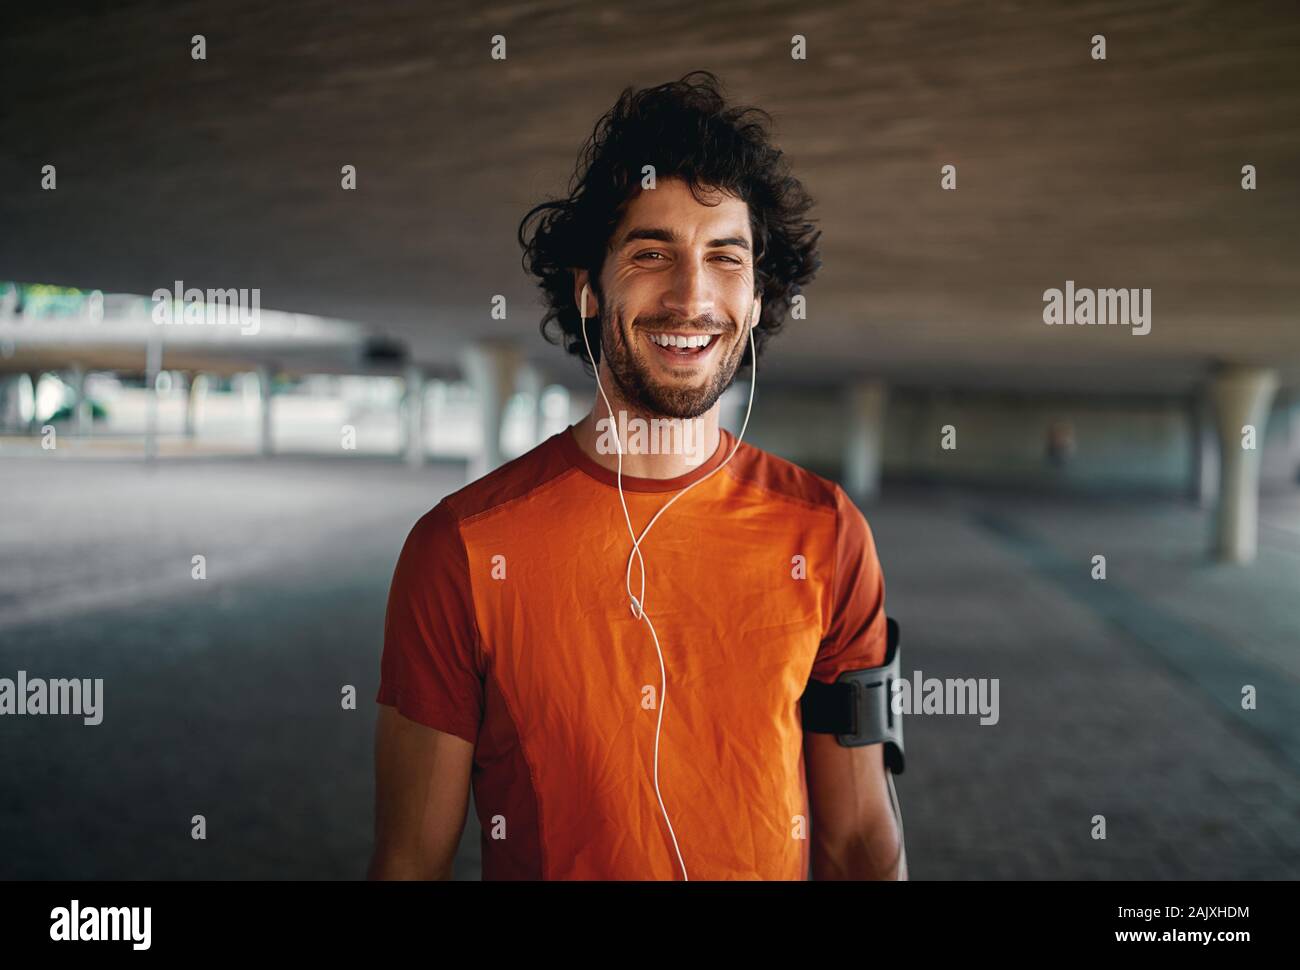 Heiteres Porträt einer gesunden sportlichen jungen Mann genießen, das Hören von Musik über Kopfhörer auf Stadt. Stockfoto